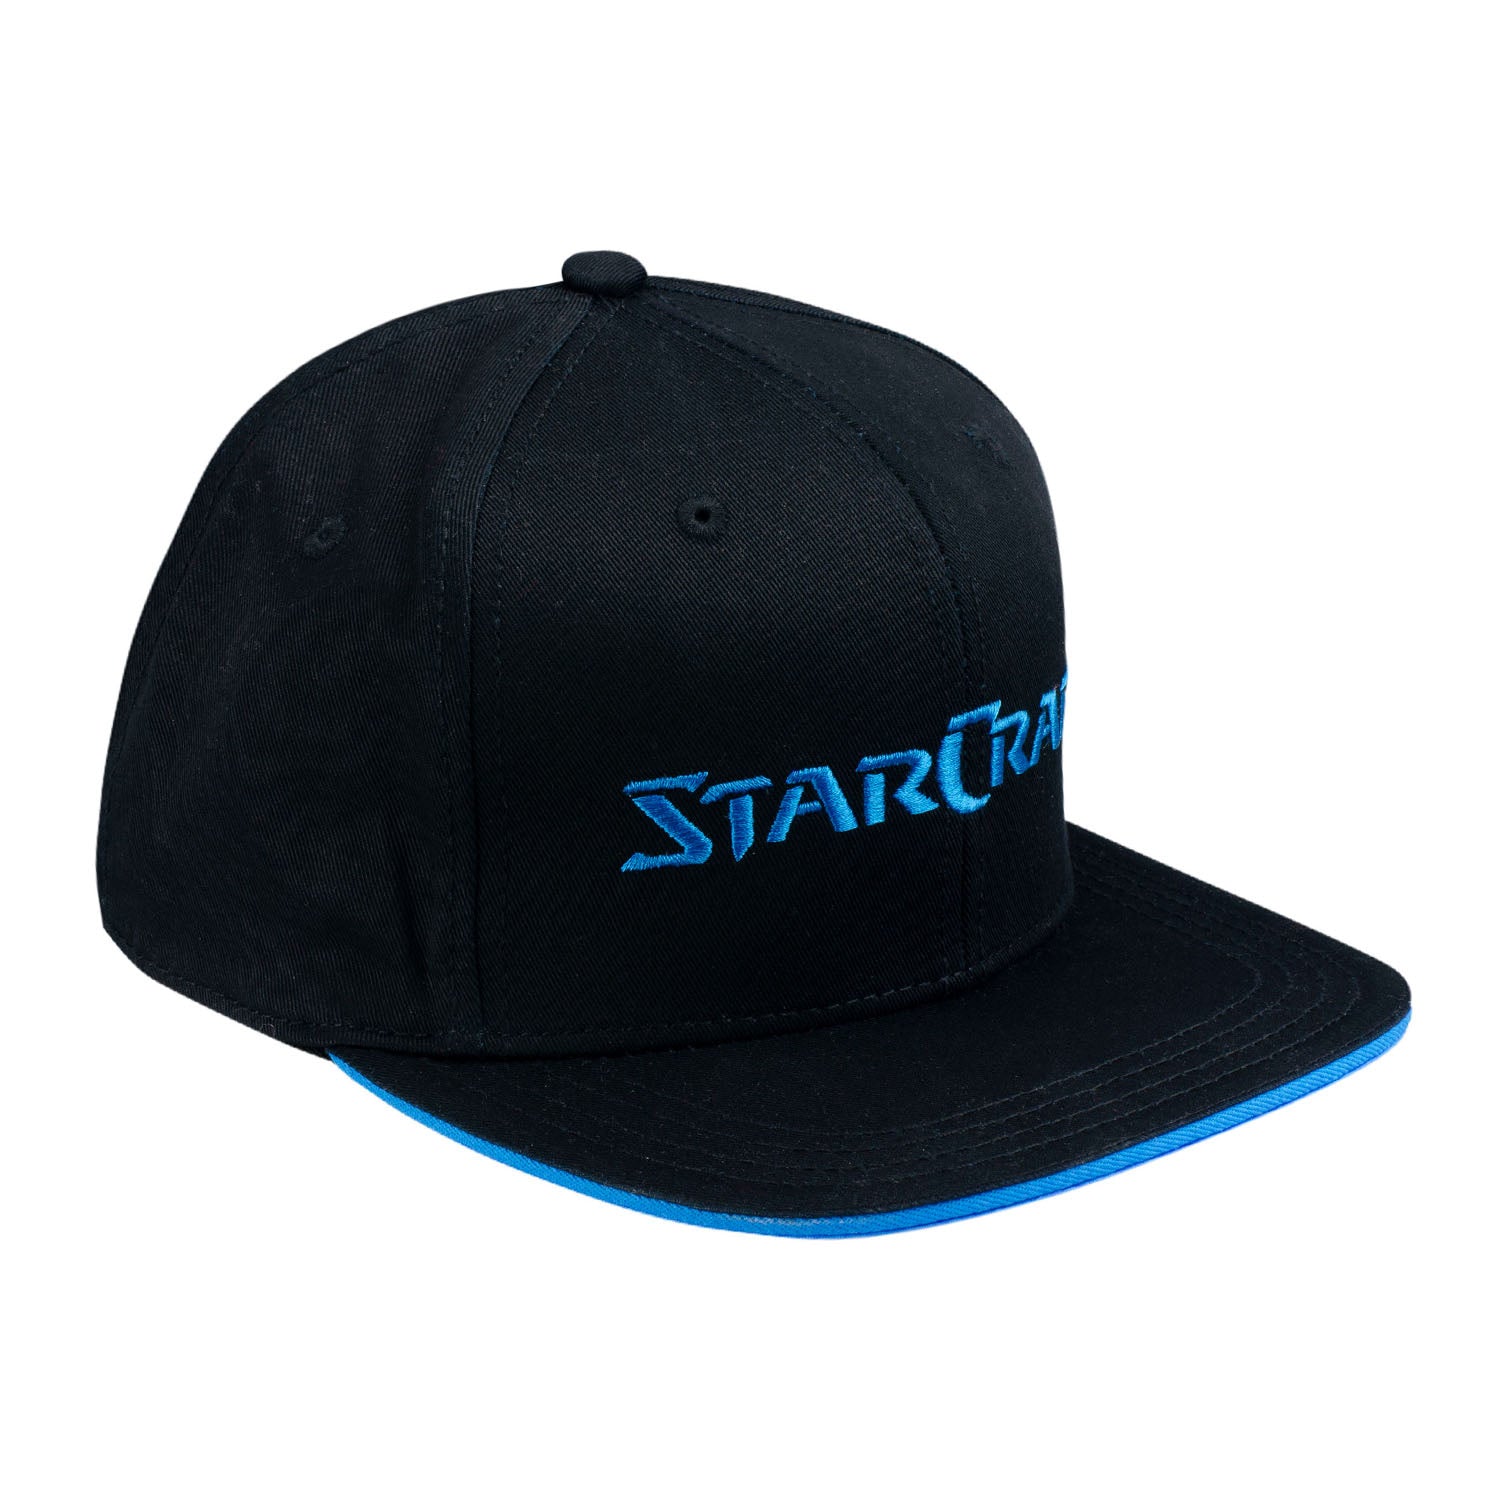 StarCraft J!NX Black Flatbill Snapback Hat - Right View